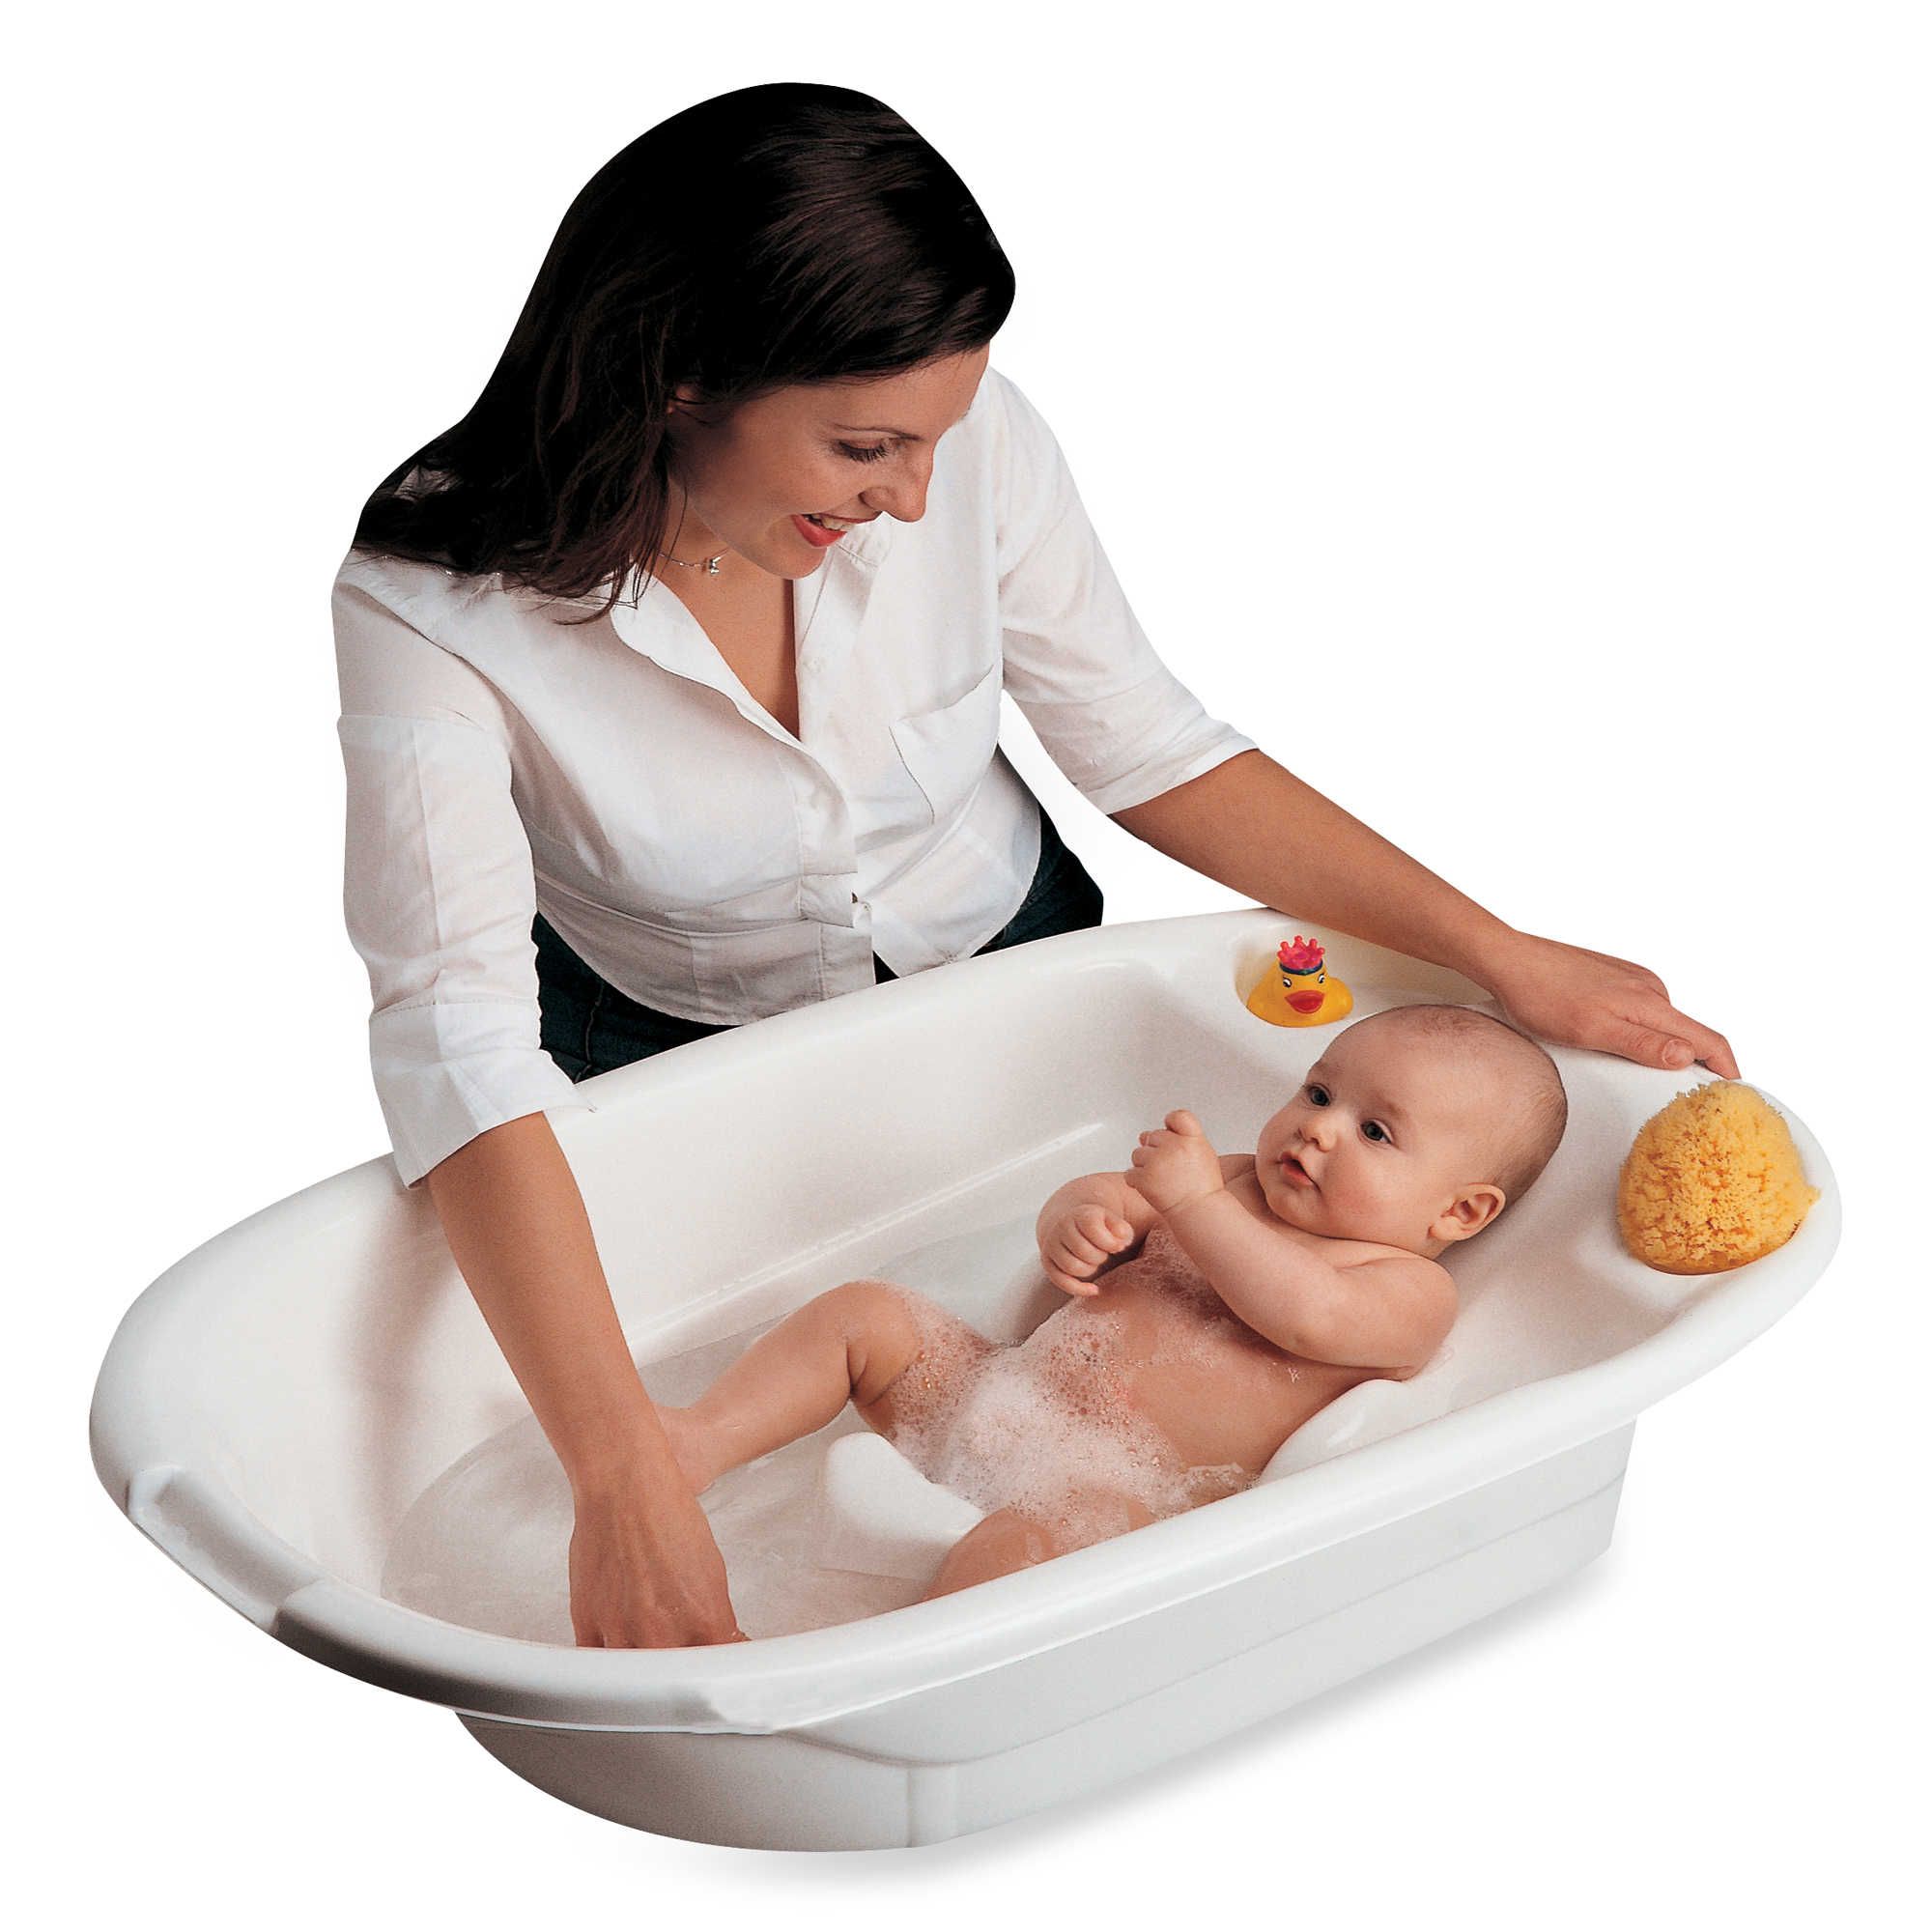 Ванночка головка. Ванночка для купания детей. Ванночка для новорожденных. Ванна для купания ребенка. Для купания новорожденных приспособления.